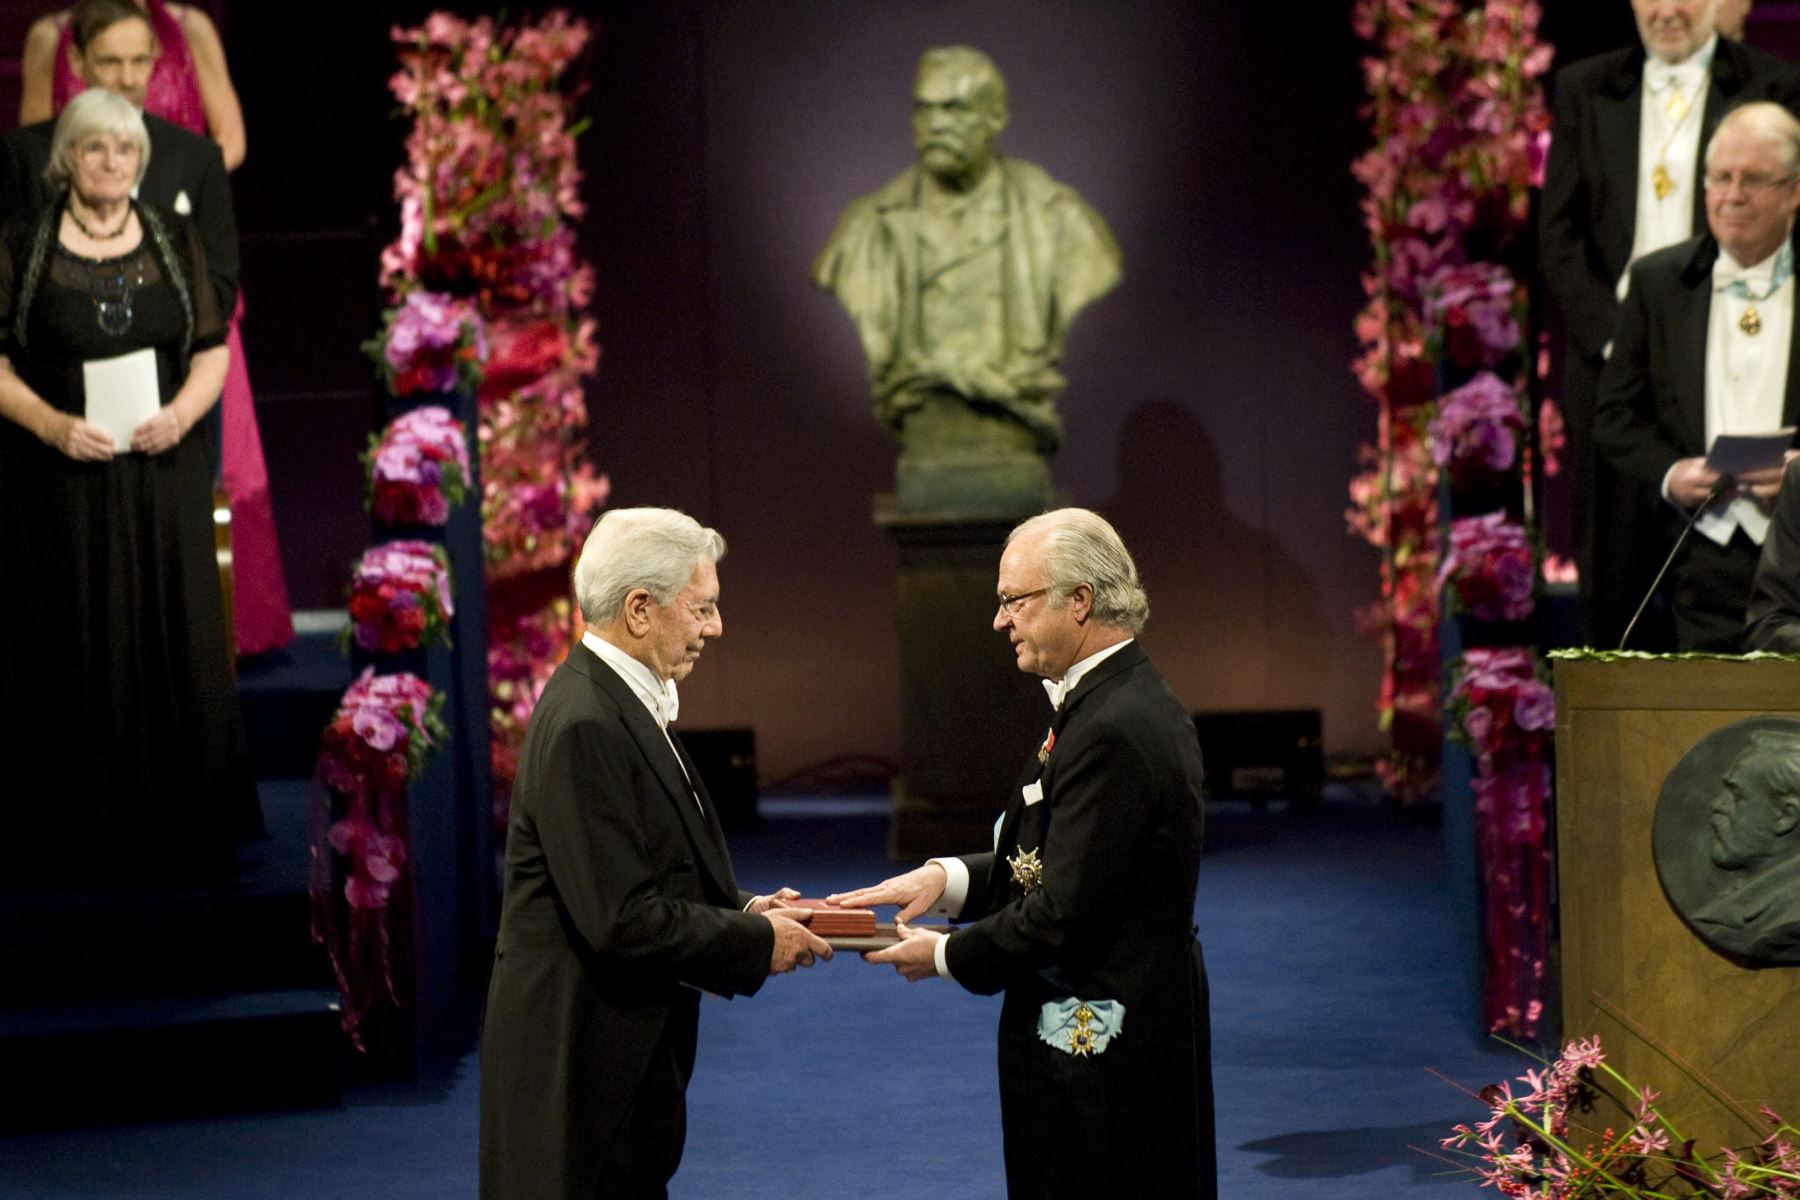 El escritor peruano Mario Vargas Llosa recibe el Premio Nobel de Literatura de manos del Rey Carlos XVI Gustavo de Suecia durante la ceremonia de entrega del Premio Nobel en la Sala de Conciertos de Estocolmo, el 10 de diciembre de 2010. Foto: AFP